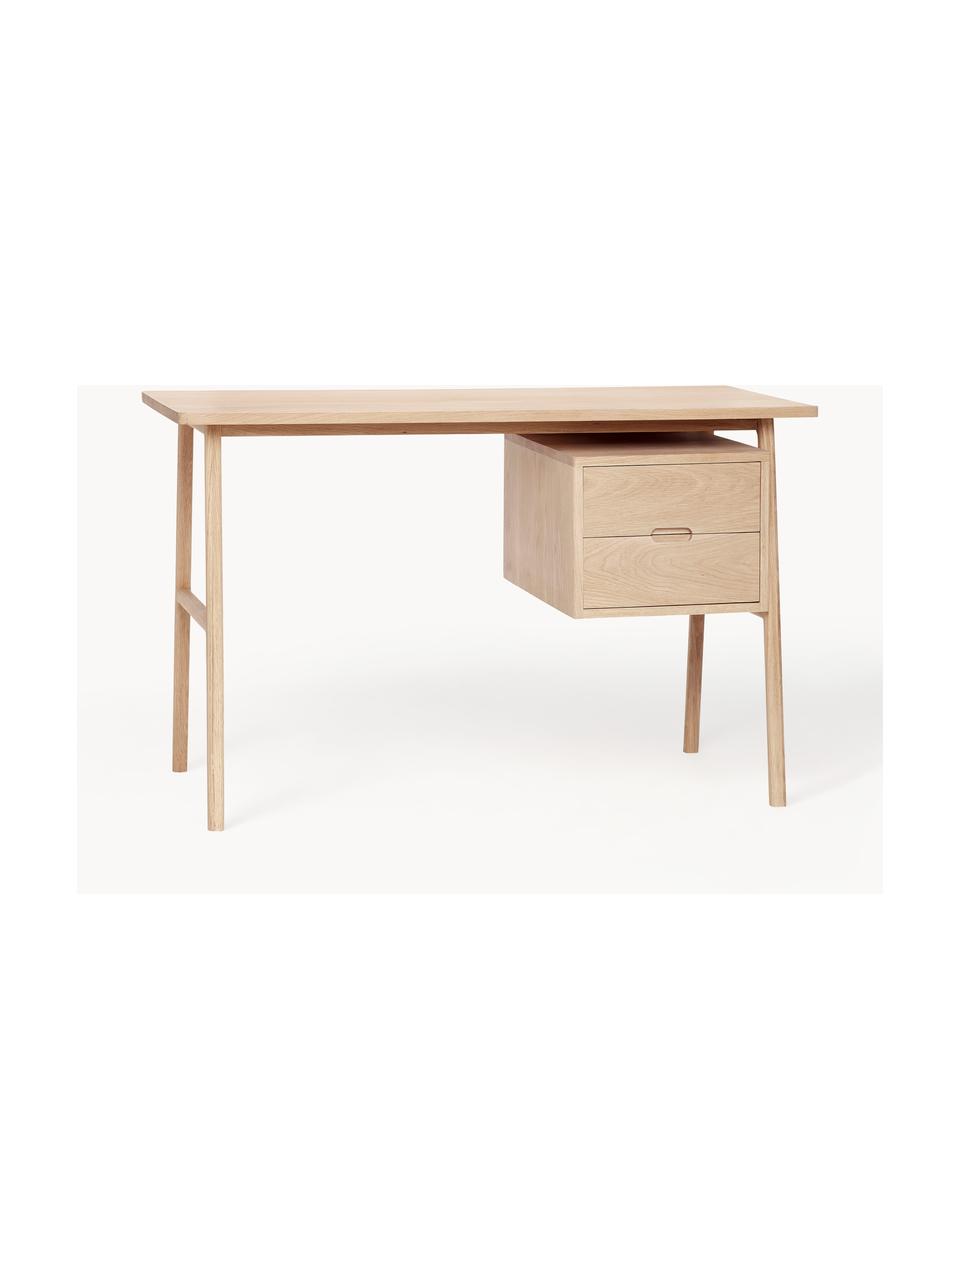 Dřevěný psací stůl Architect, Dubová dýha, dubové dřevo

Tento produkt je vyroben z udržitelných zdrojů dřeva s certifikací FSC®., Dubové dřevo, Š 120 cm, H 57 cm